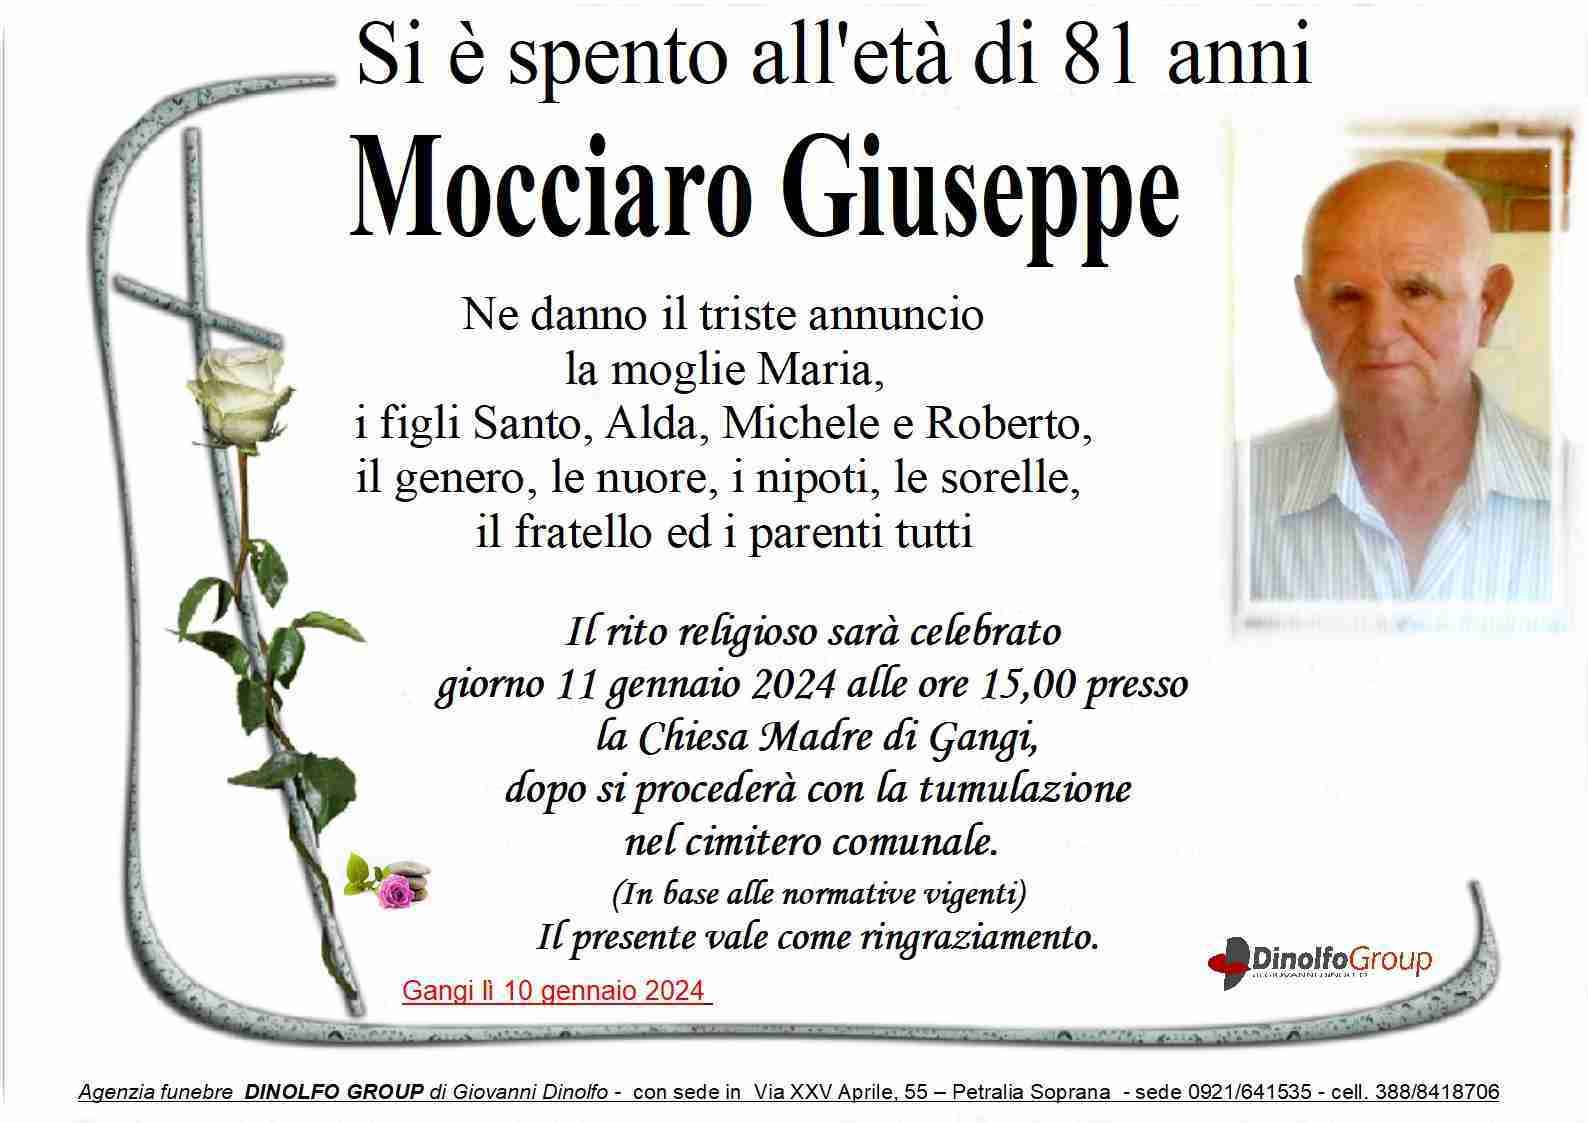 Giuseppe Mocciaro